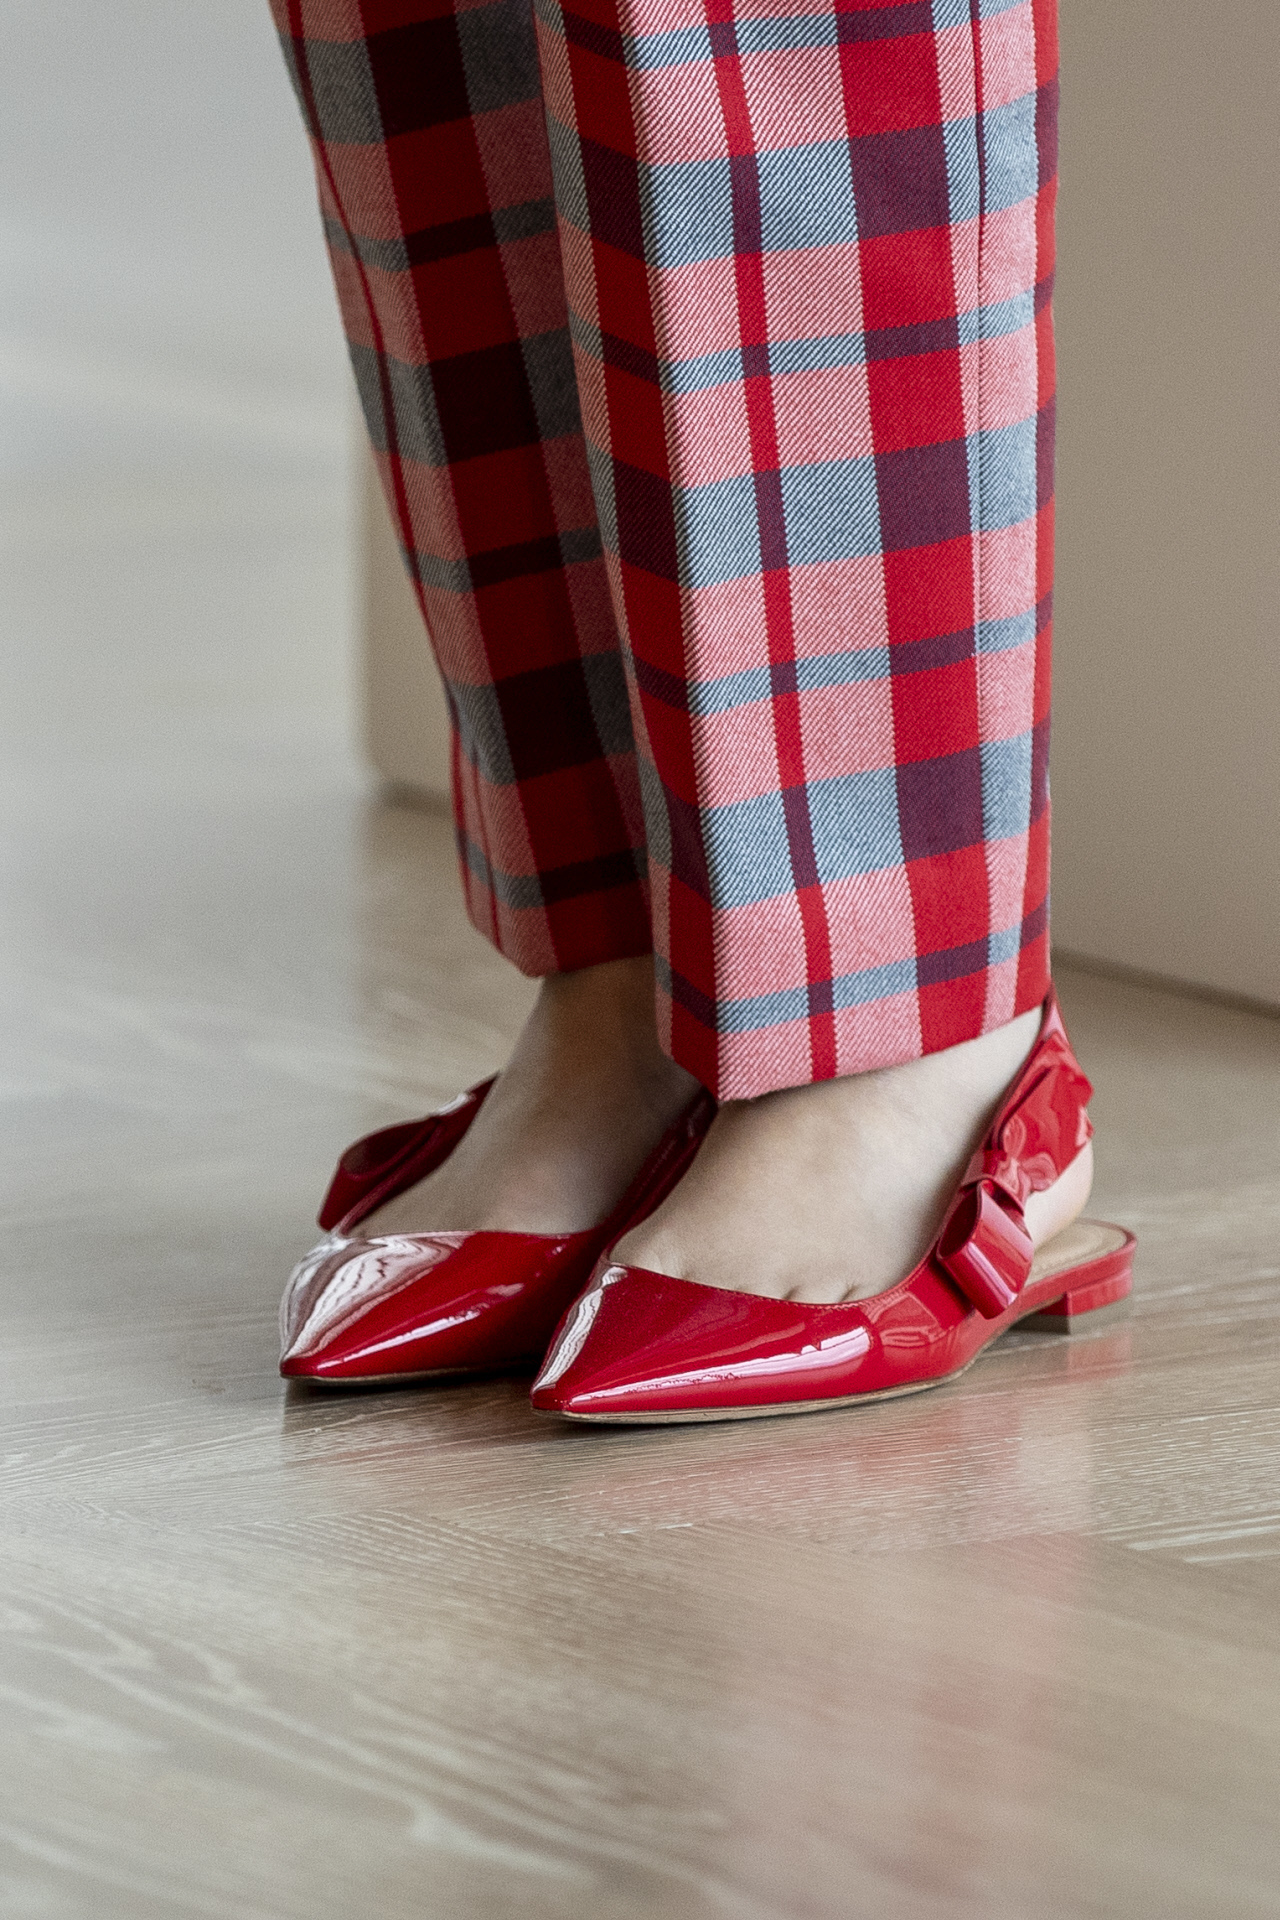 Detalle de los zapatos rojos de Maria Grazia Chiuri para Dior